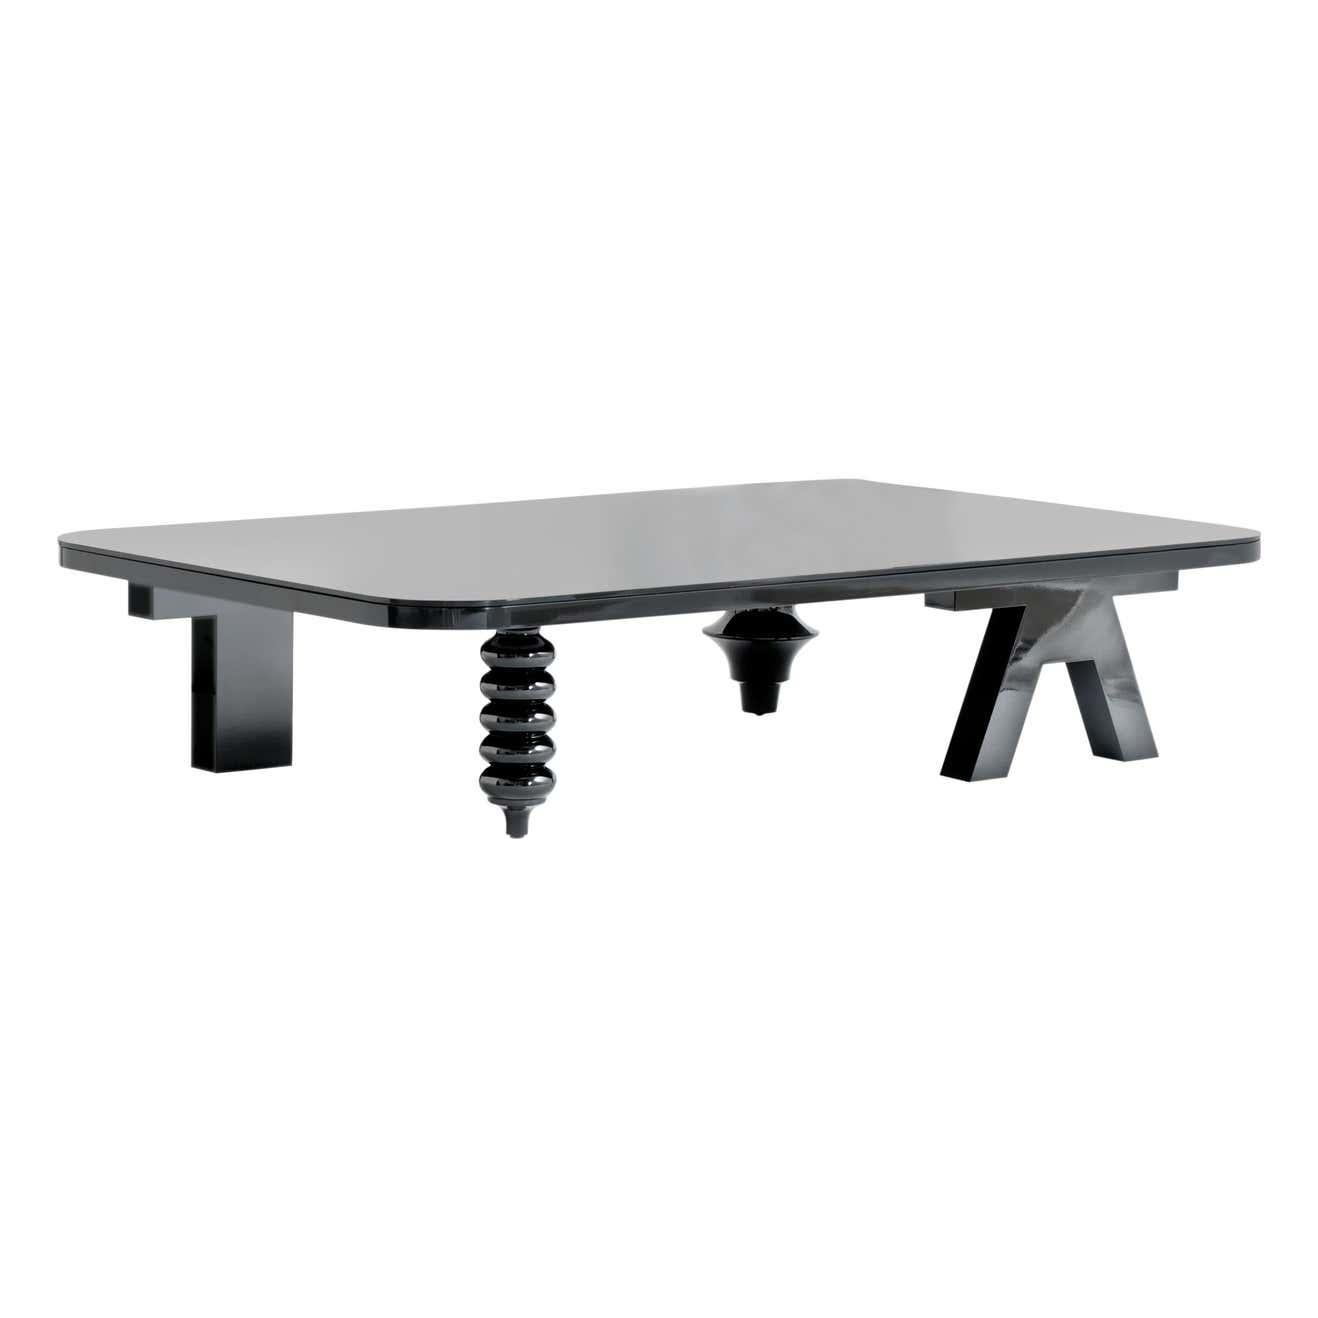 Rechteckiger, niedriger Tisch mit mehreren Beinen und hochglänzender Glasplatte